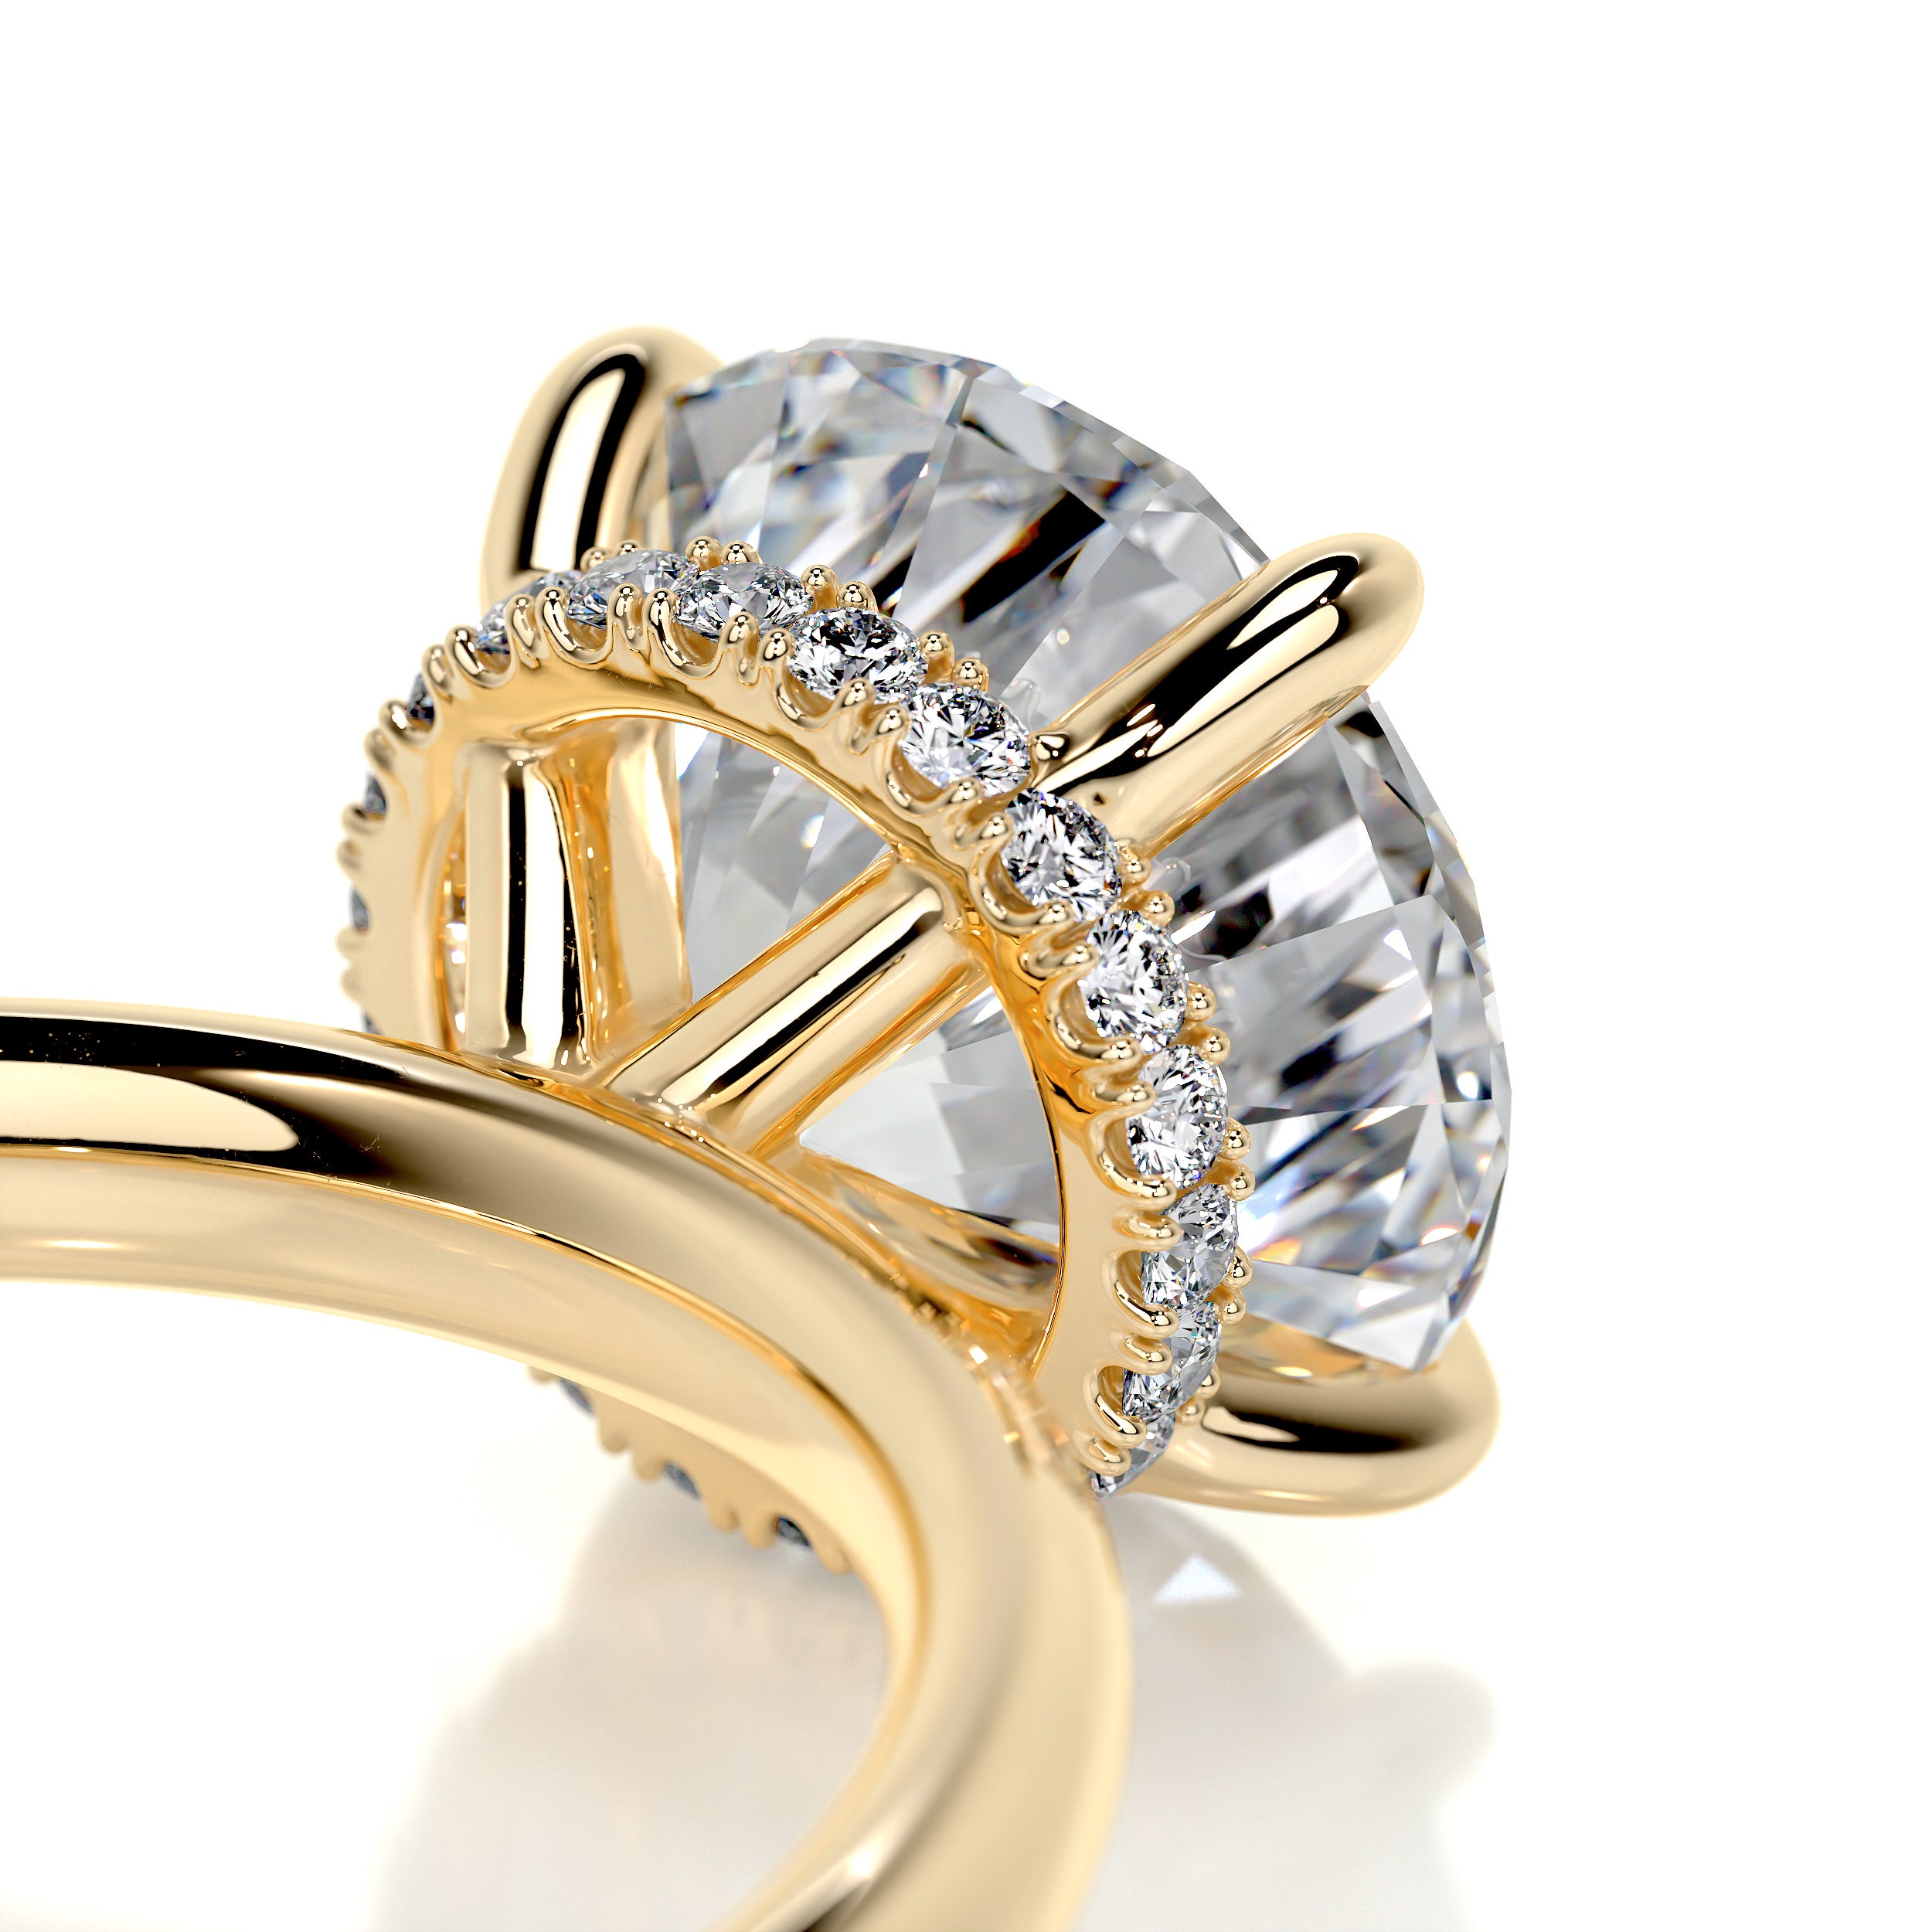 Willow Diamond Engagement Ring   (2.1 Carat) -18K Yellow Gold